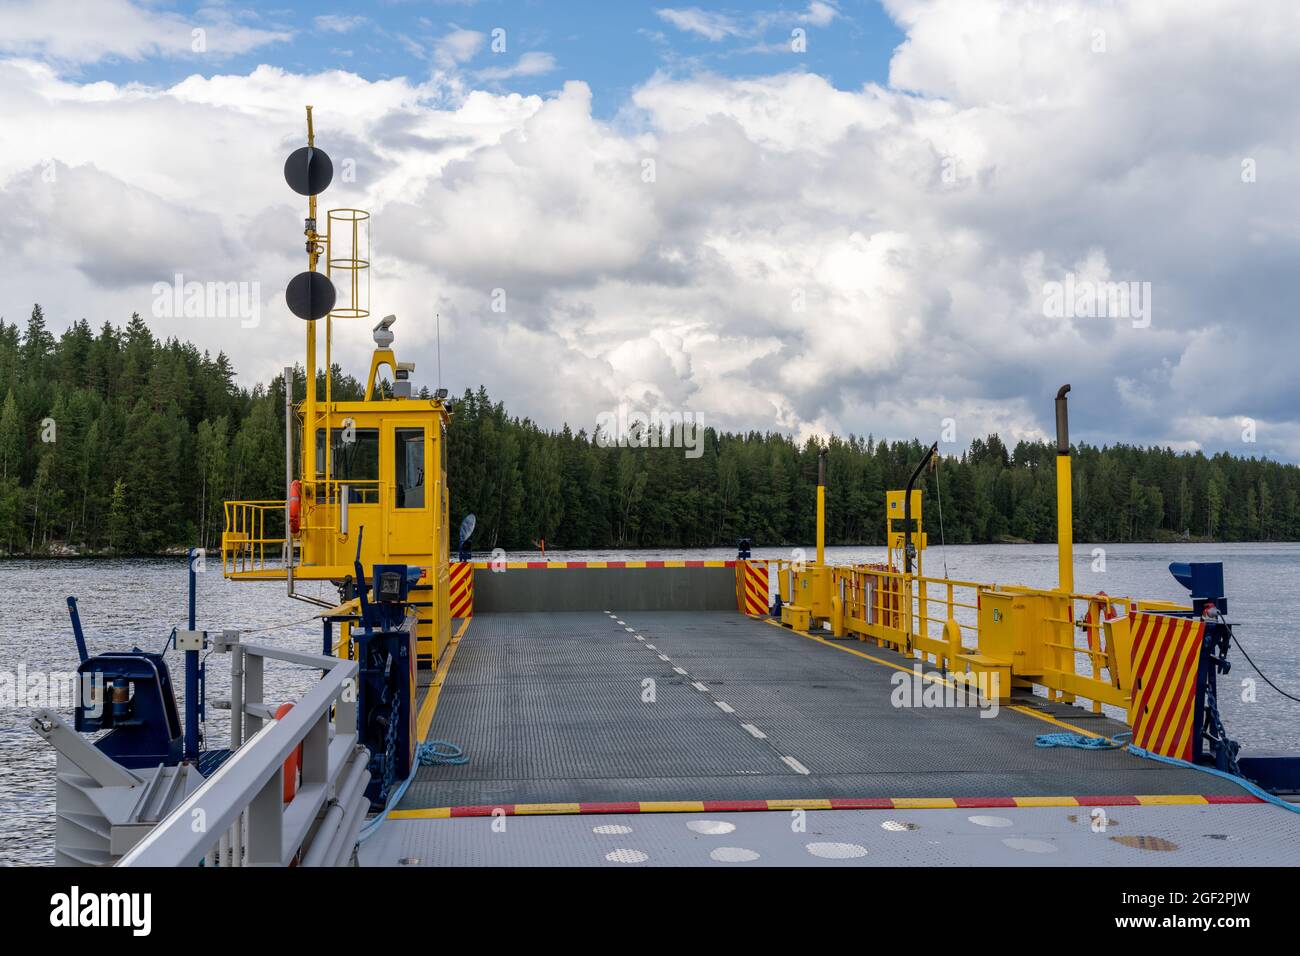 Hanhivirraniemi, Finlandia - 31 luglio 2021: Vista dello sbarco dei traghetti e del traghetto vuoto sul lago Enonvesi Foto Stock